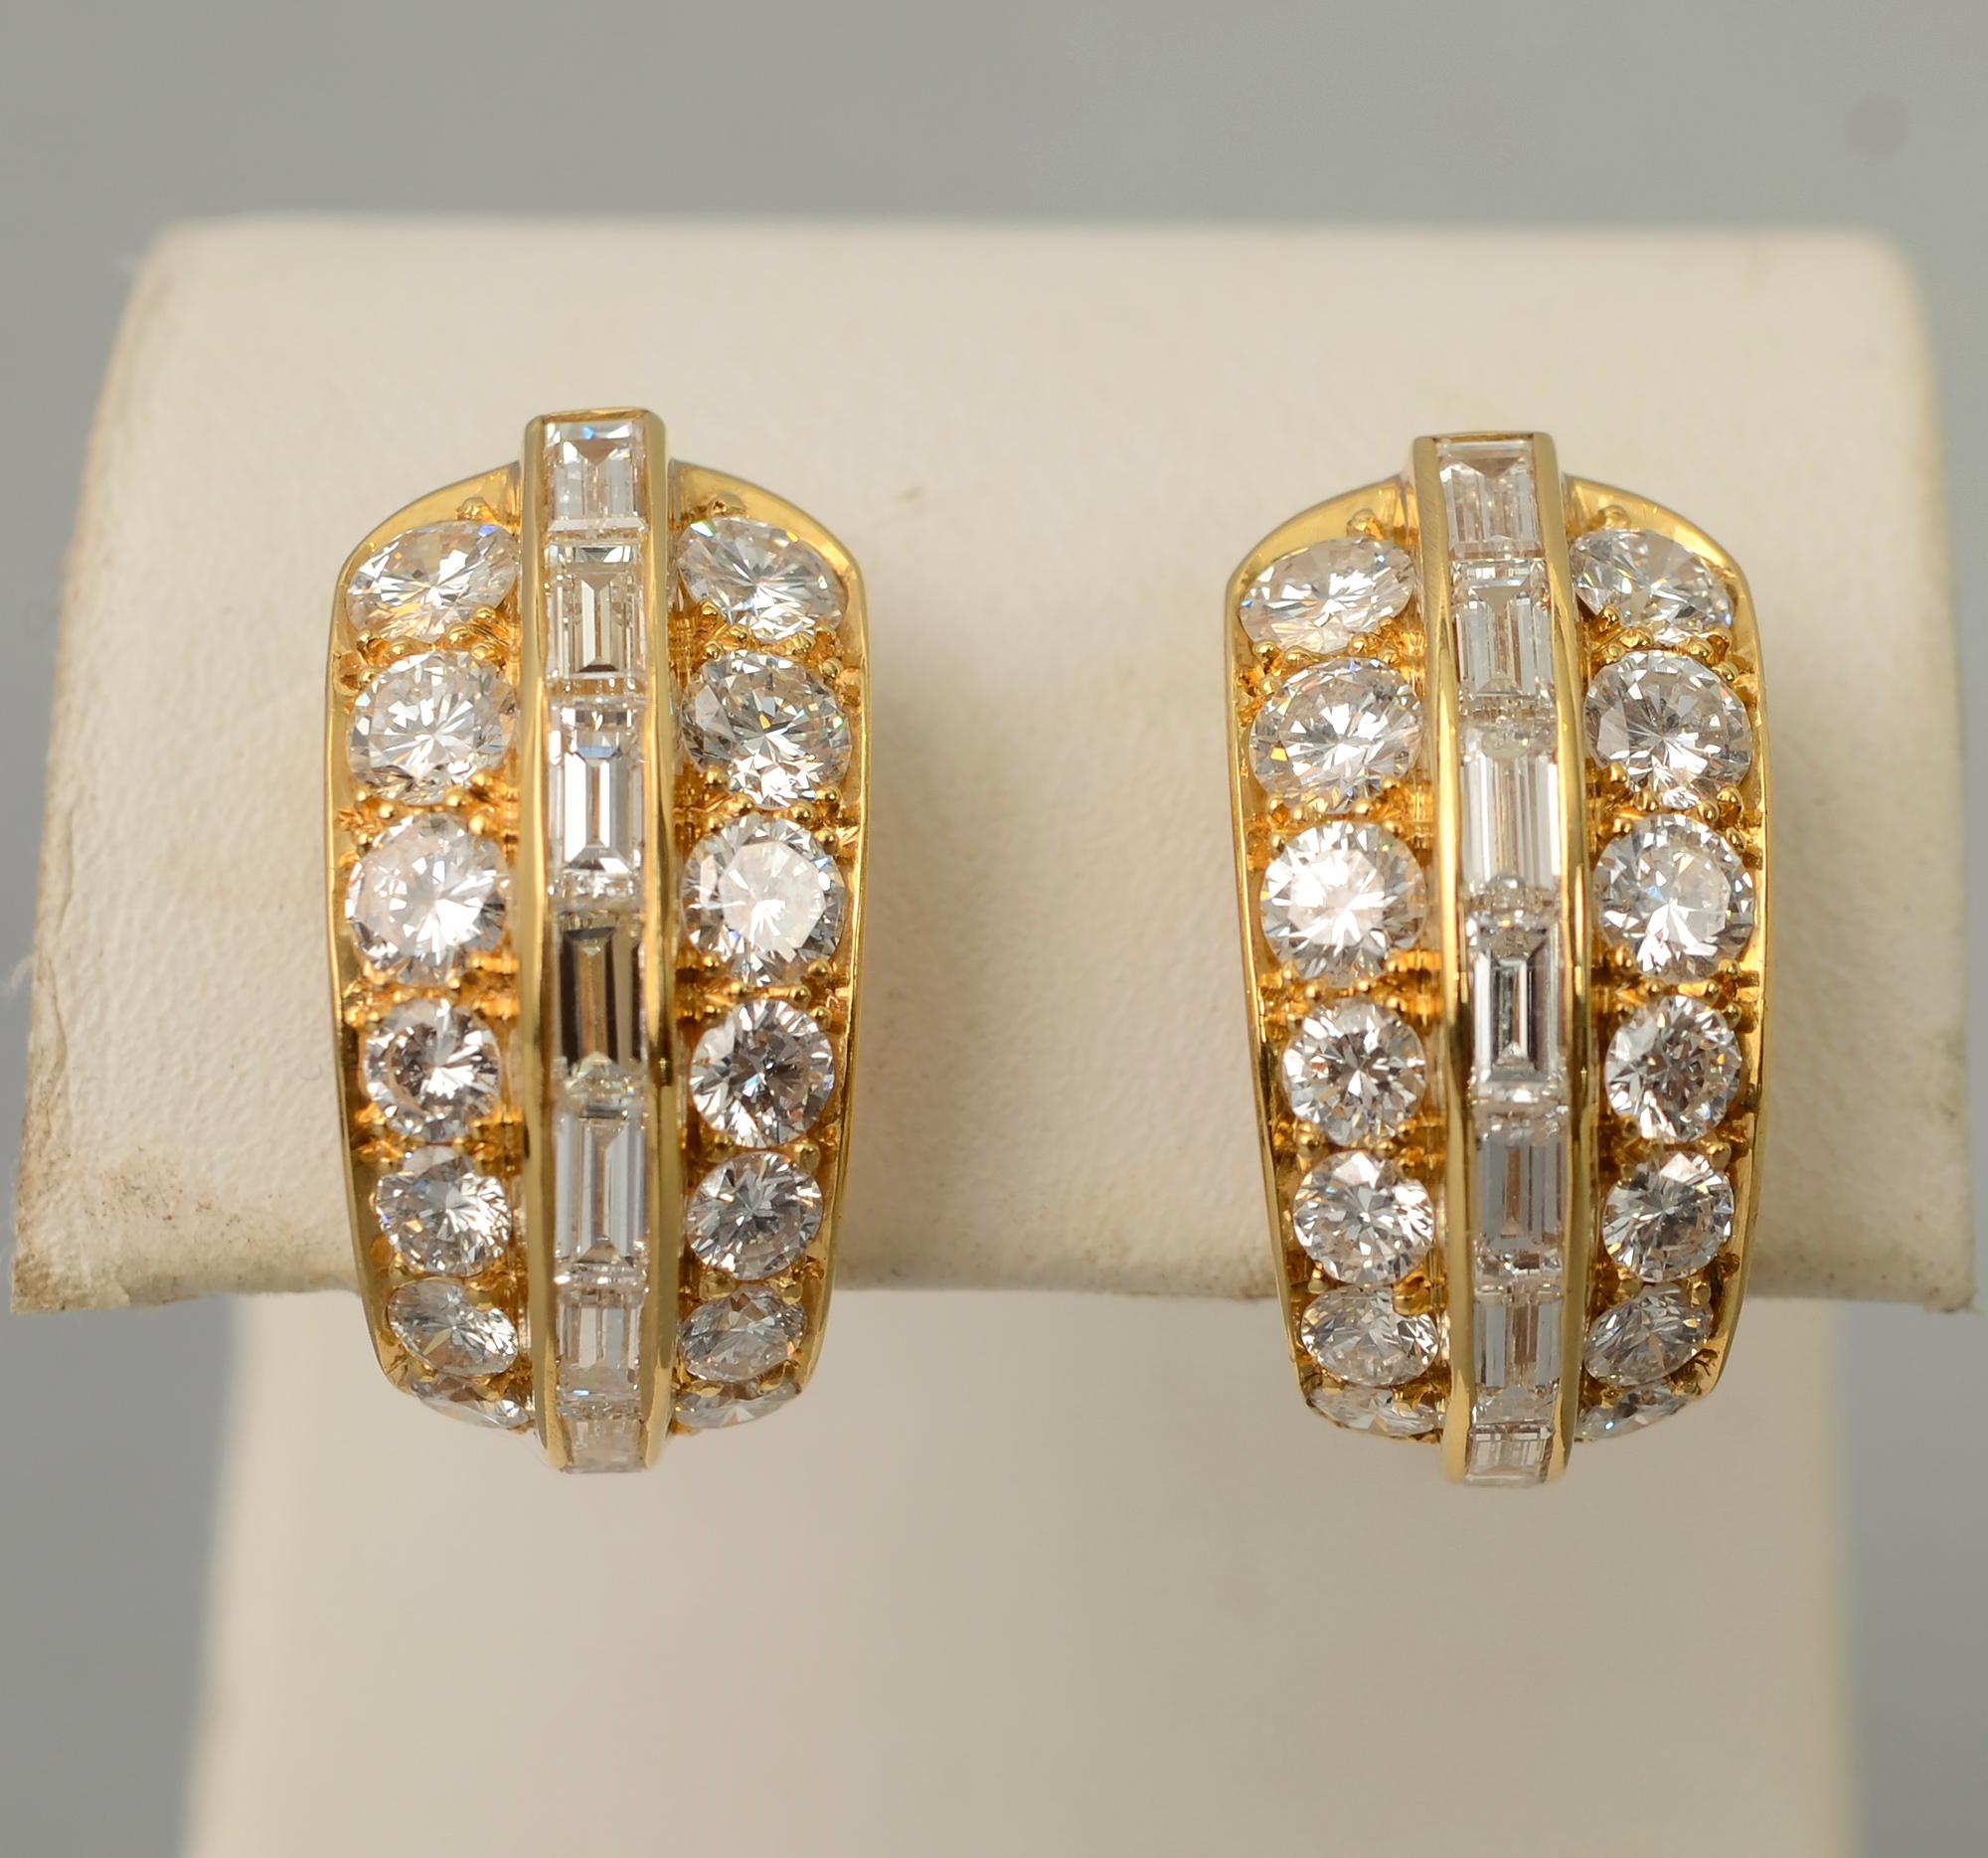 Schicke und elegante Diamant-Halbring-Ohrringe von Bulgari. Sie bestehen aus 44 Diamanten der Qualität VS 1 mit einem Gesamtgewicht von 4,5 Karat. Die Ohrringe messen 3/4